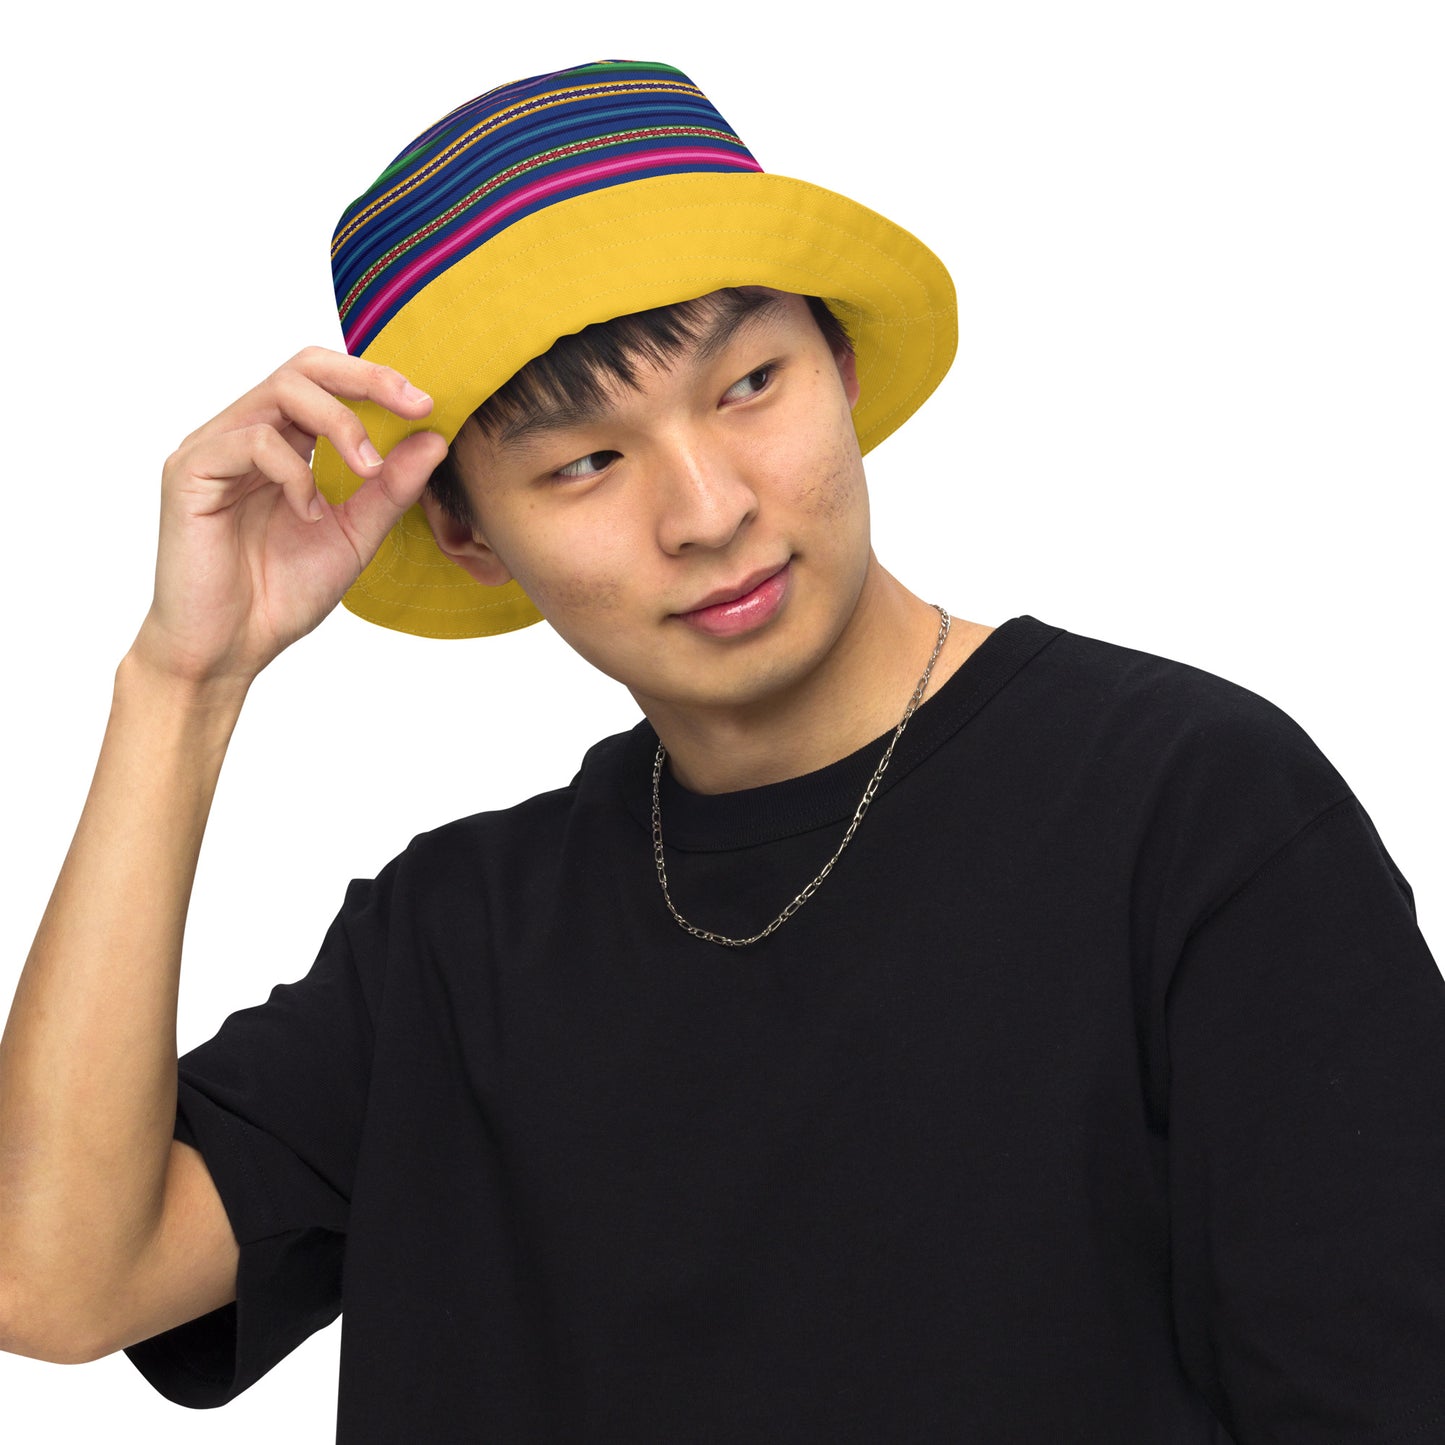 Peruvian Reversible Bucket Hat